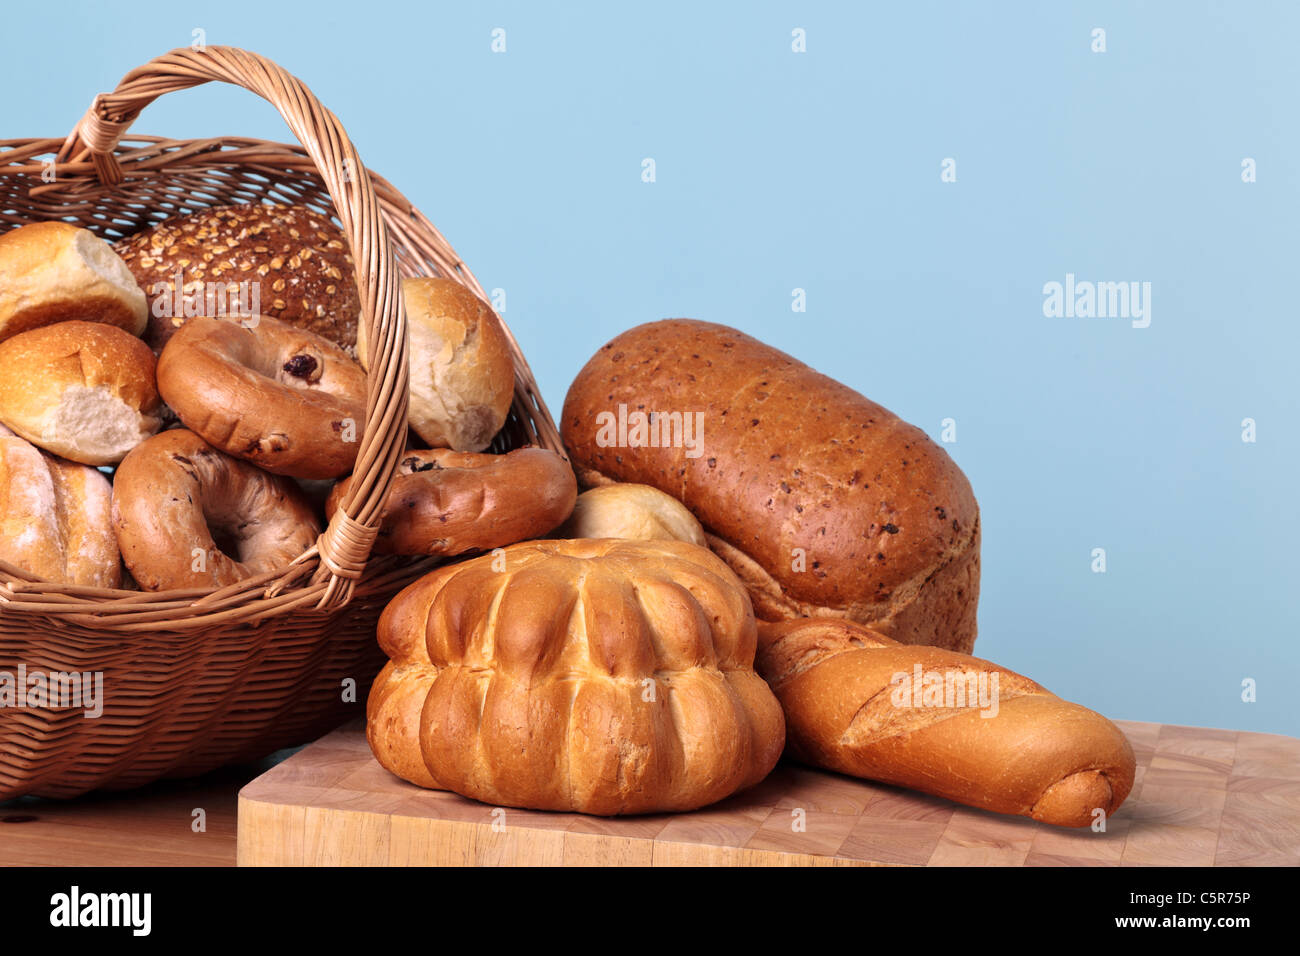 Photo de différents types de pain s'échappant d'un panier. Banque D'Images